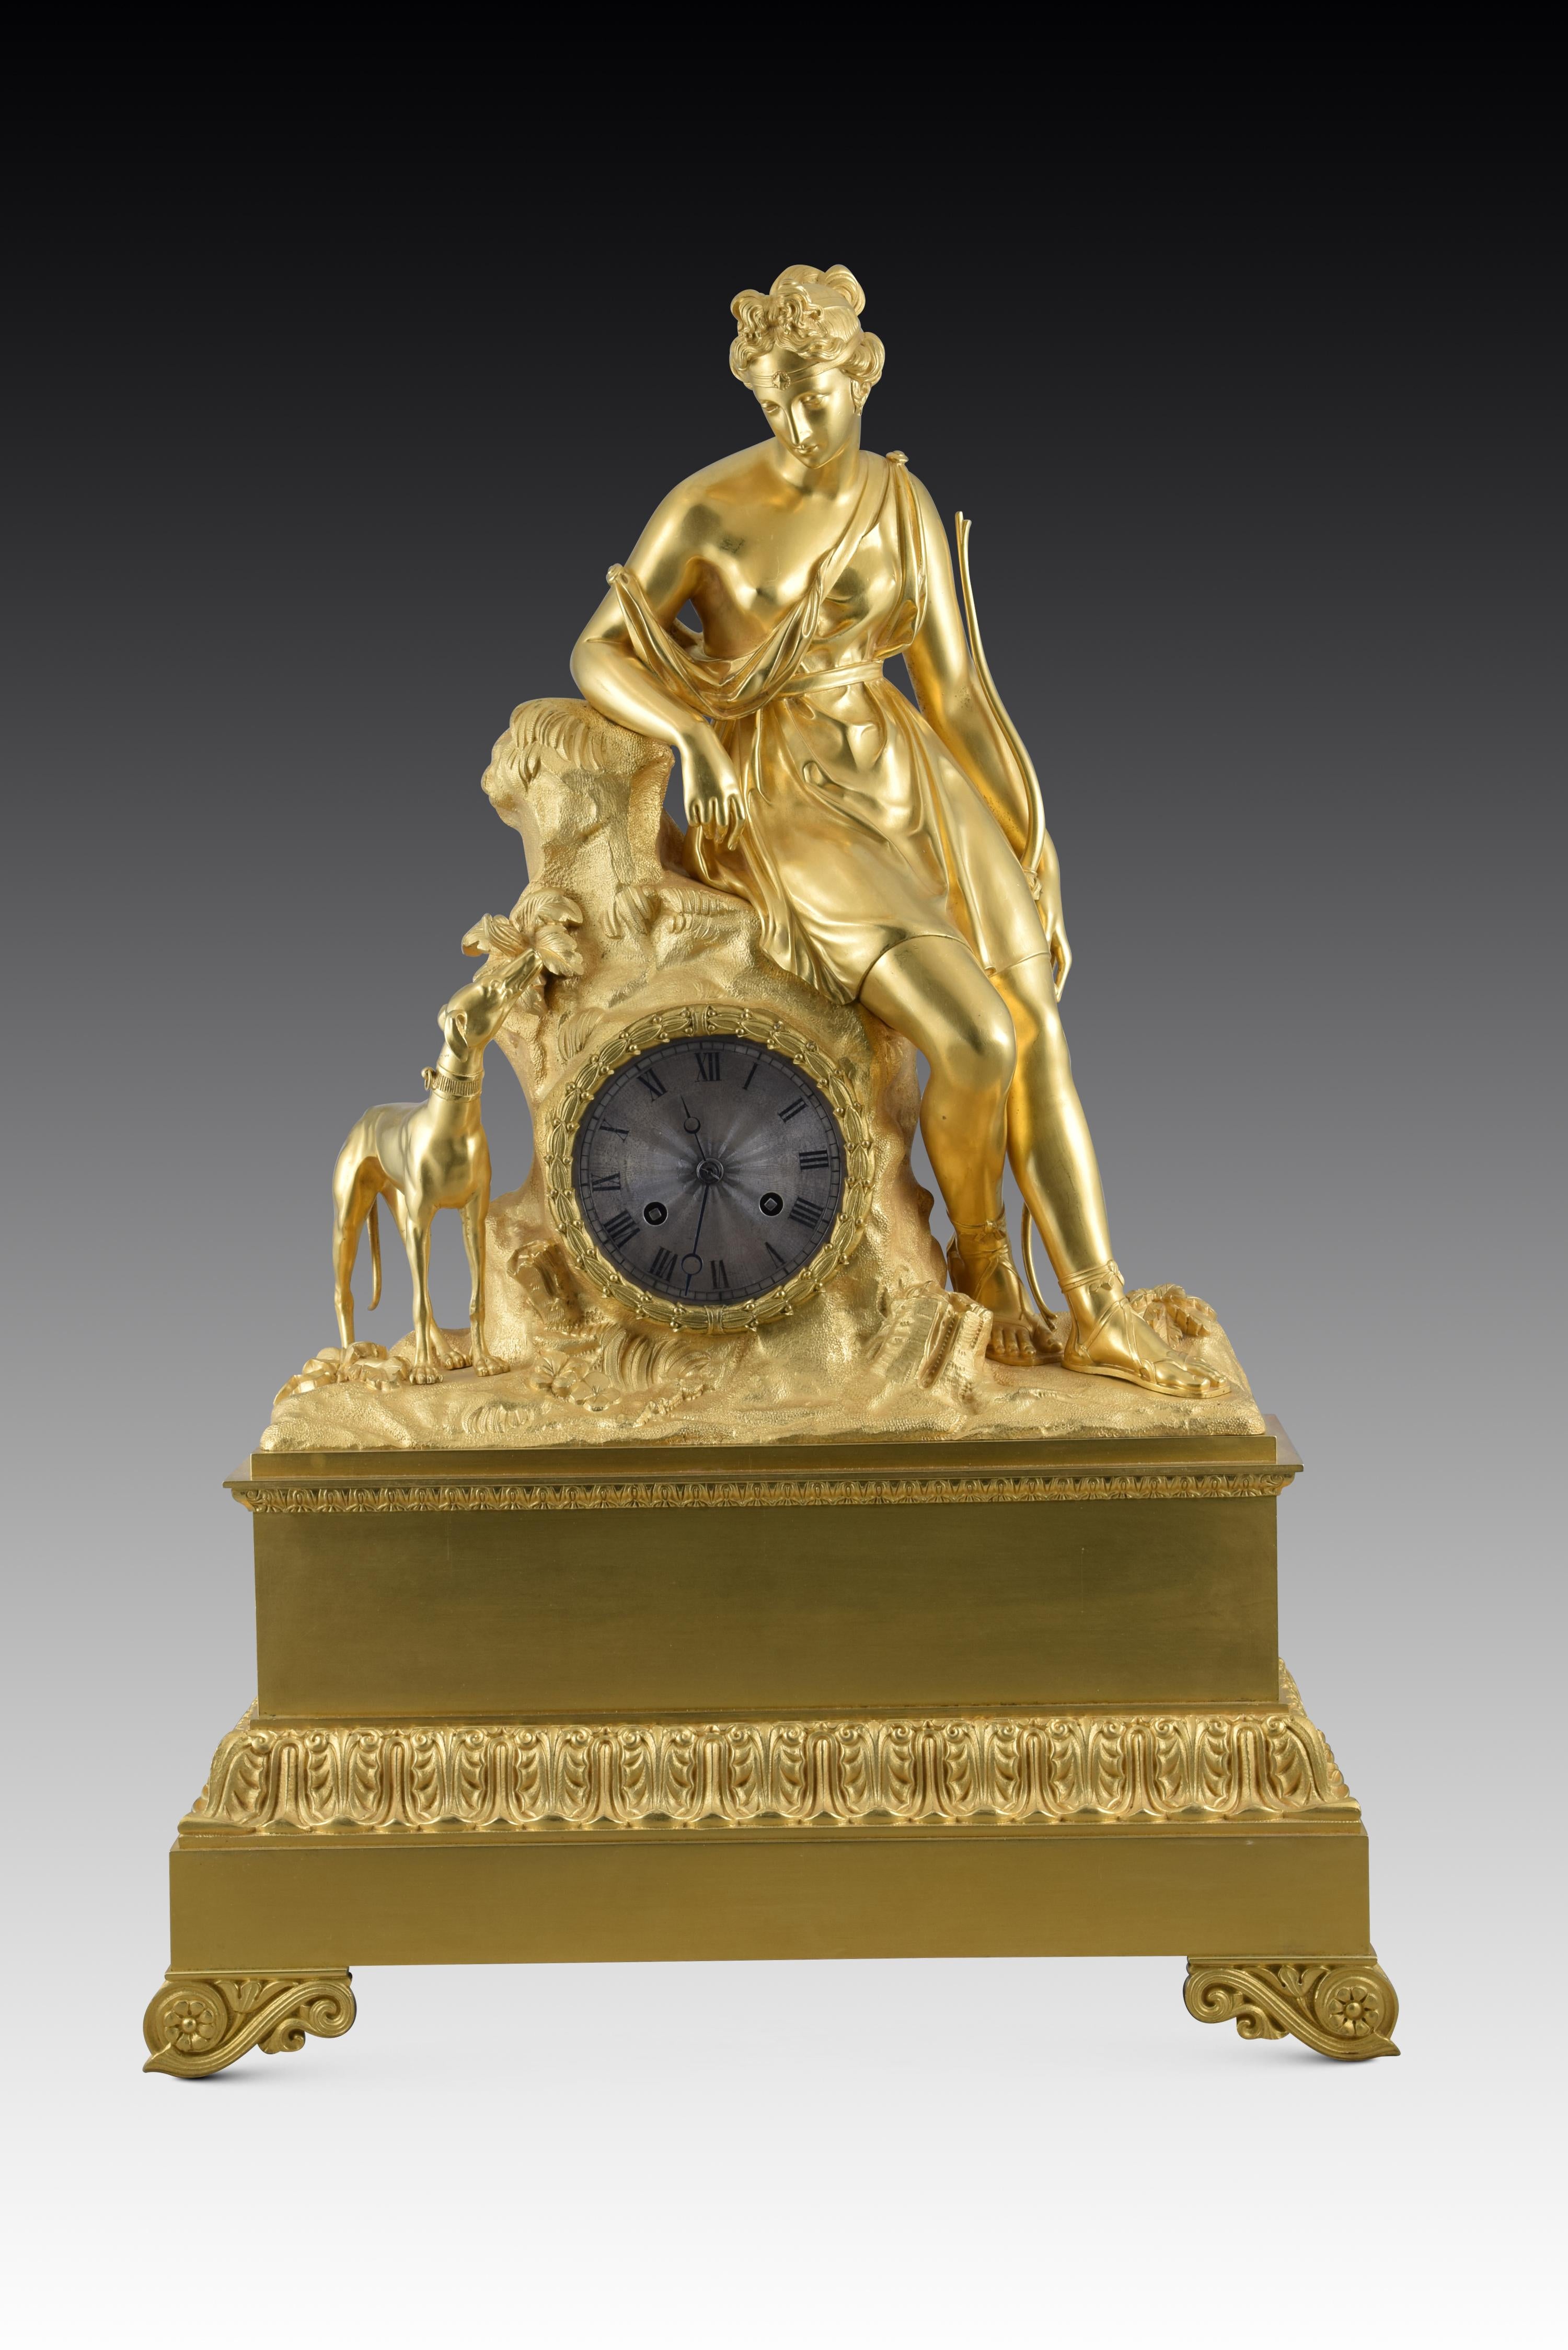 Horloge de table avec machine de Paris, Diana the Huntress. Bronze doré, métal. France, 19ème siècle. 
Pendule de table à mécanisme parisien et boîtier en bronze doré (probablement au mercure), composé d'une base rectangulaire reposant sur des pieds